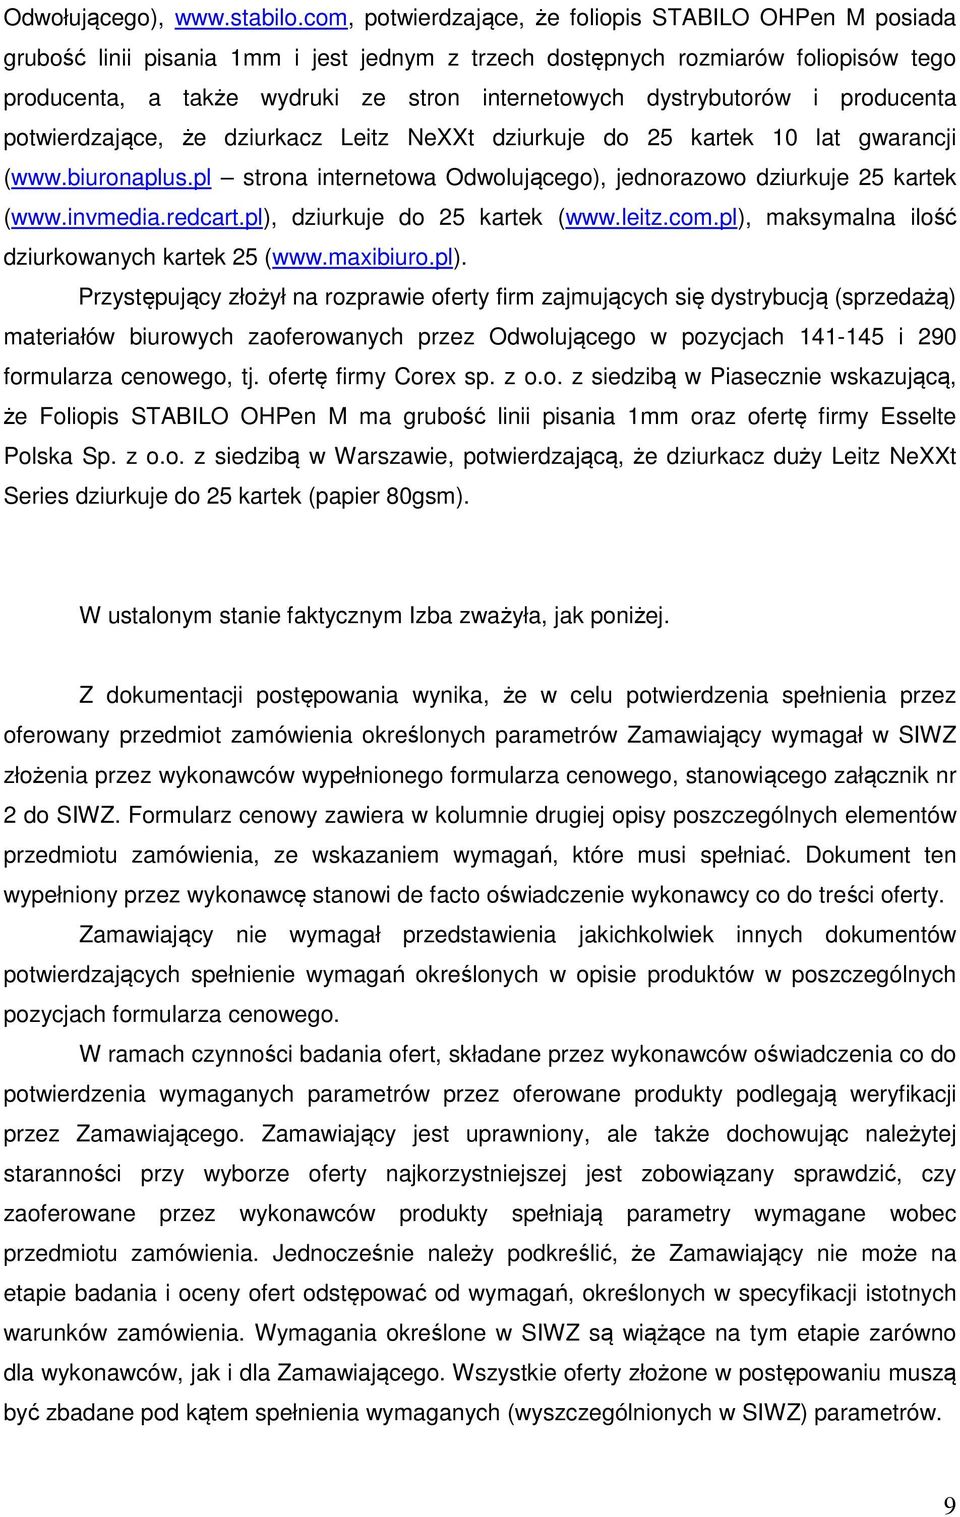 dystrybutorów i producenta potwierdzające, że dziurkacz Leitz NeXXt dziurkuje do 25 kartek 10 lat gwarancji (www.biuronaplus.pl strona internetowa Odwolującego), jednorazowo dziurkuje 25 kartek (www.